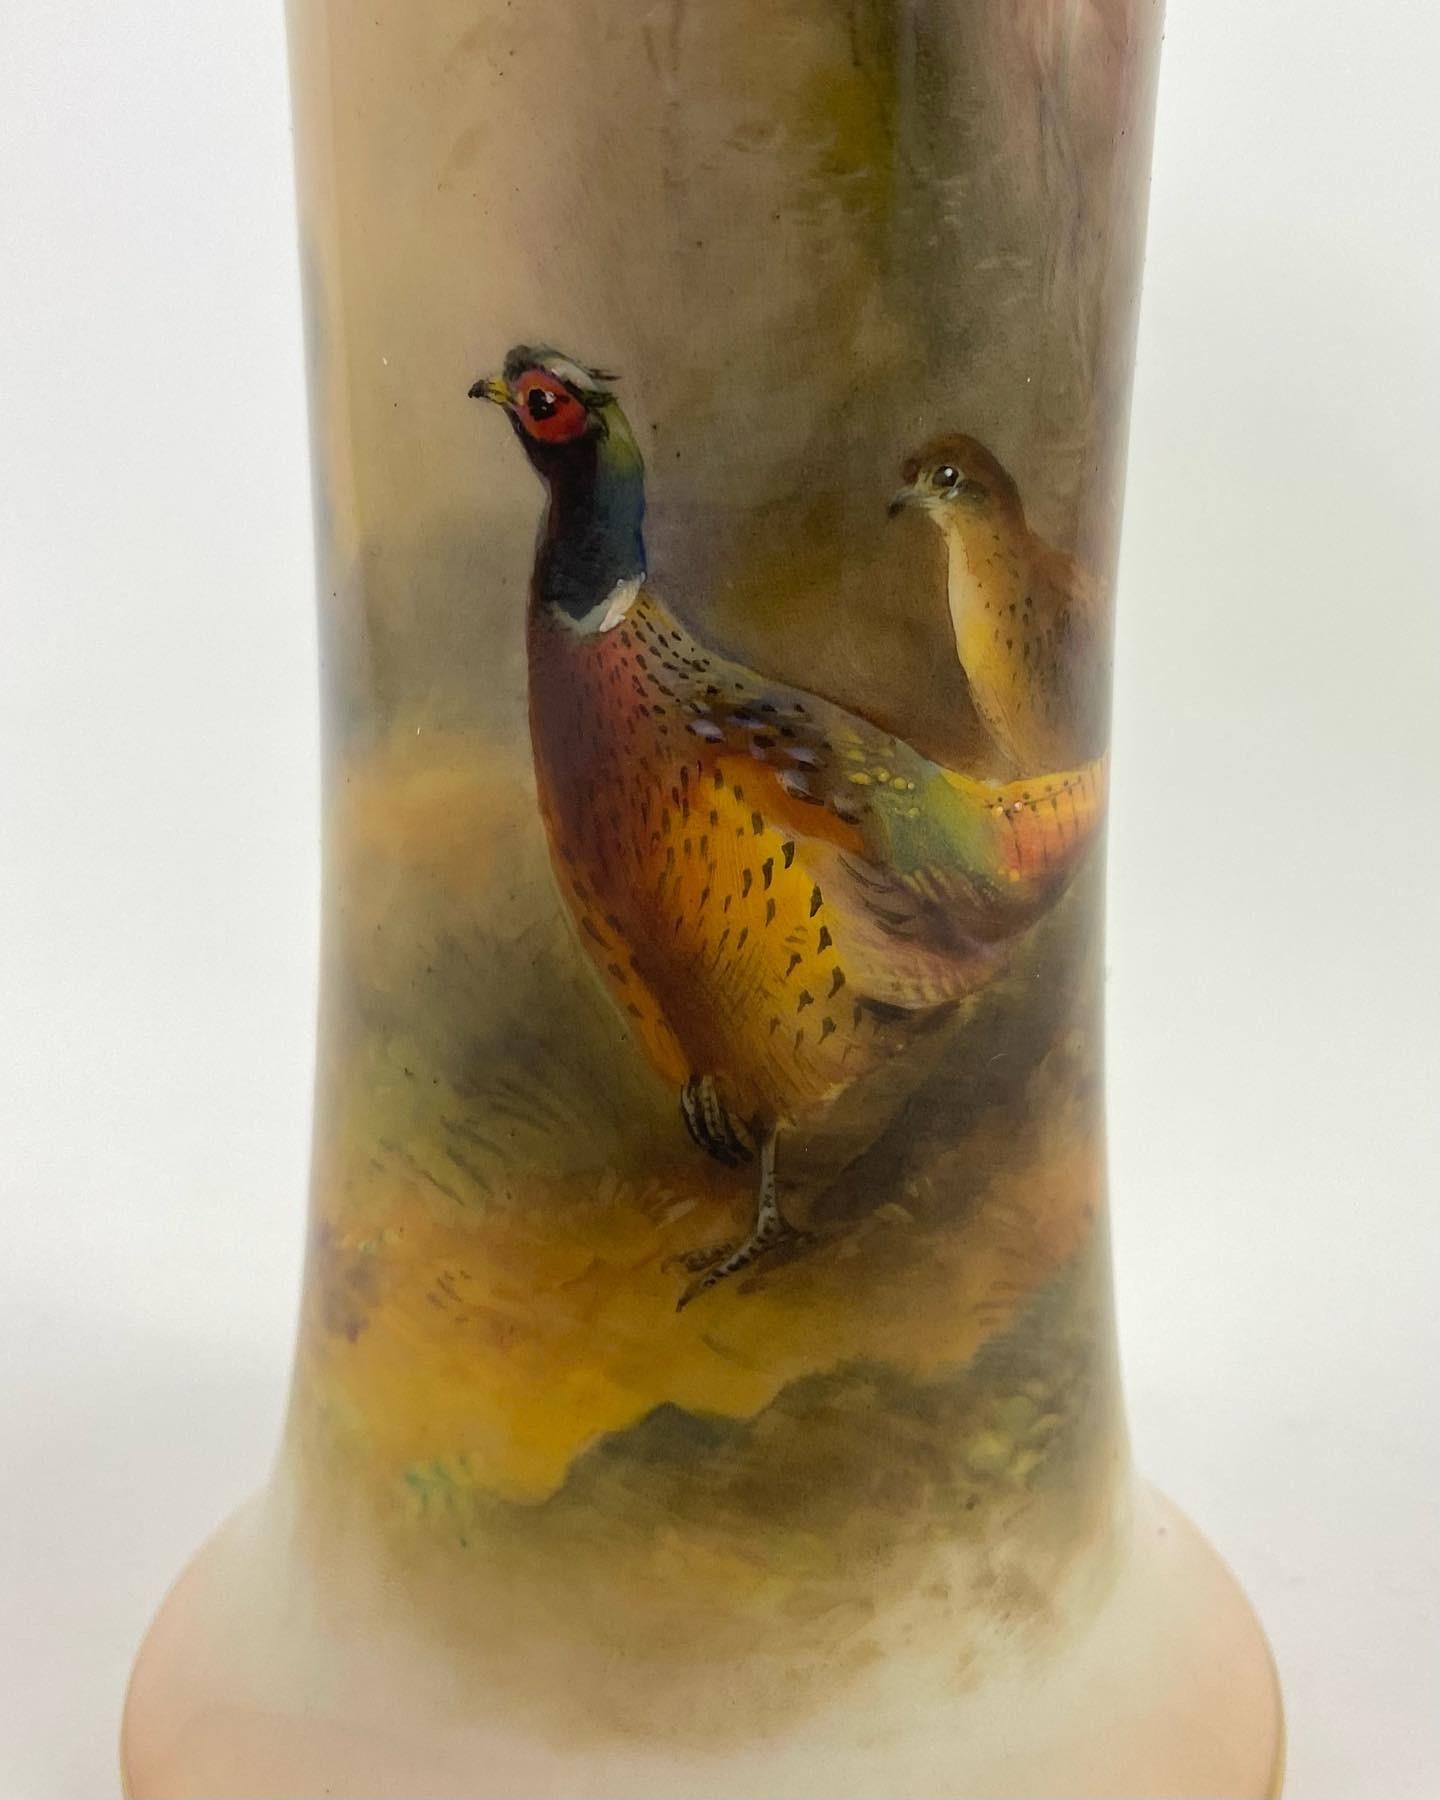 Mid-20th Century Royal Worcester Porcelain Vase, Pheasants, James Stinton, D. 1934